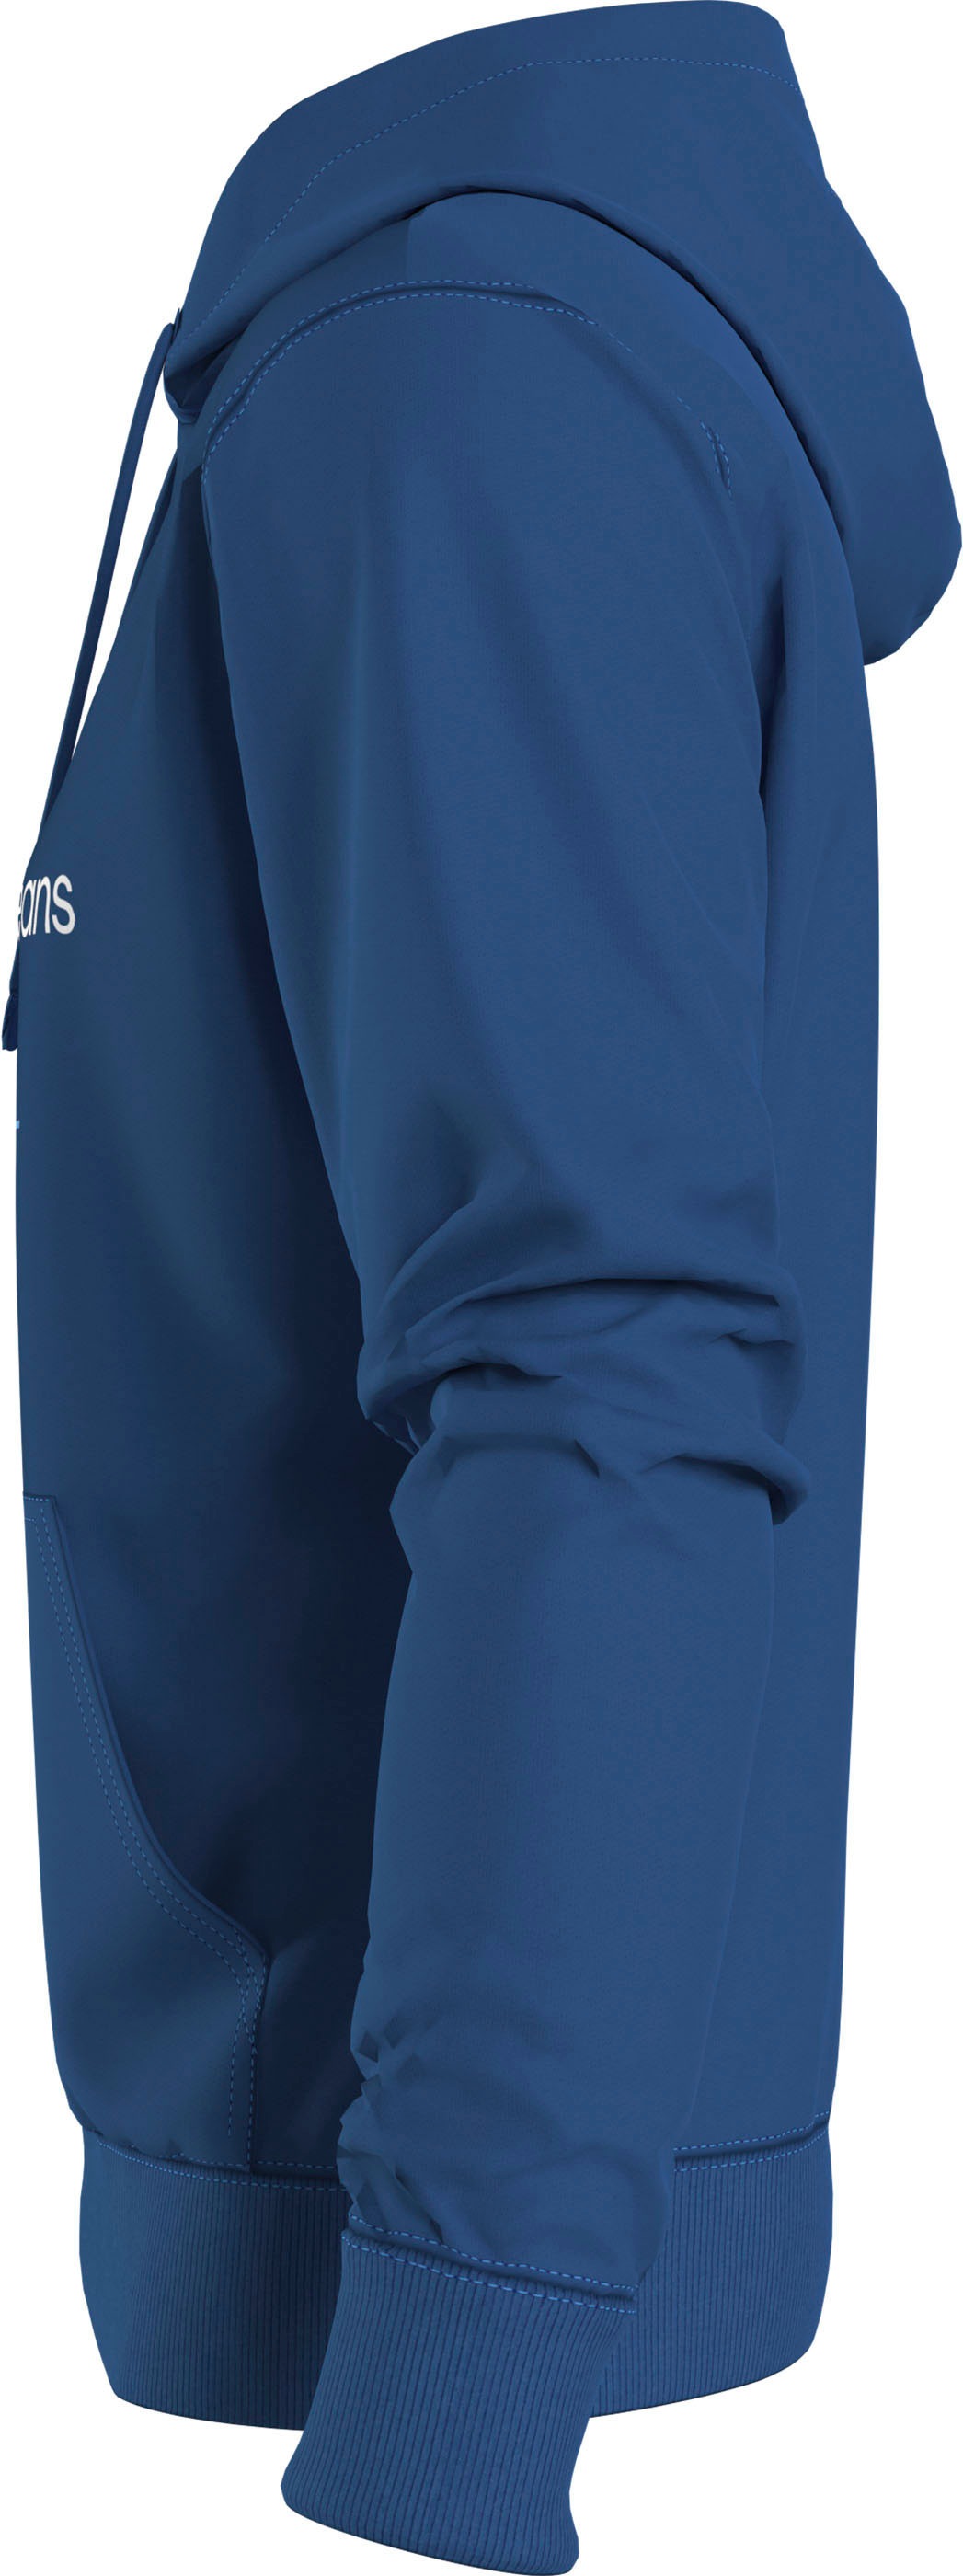 Calvin Klein Jeans Kapuzensweatshirt »SEASONAL MONOLOGO REGULAR HOODIE«,  mit Logodruck und Stickerei bei ♕